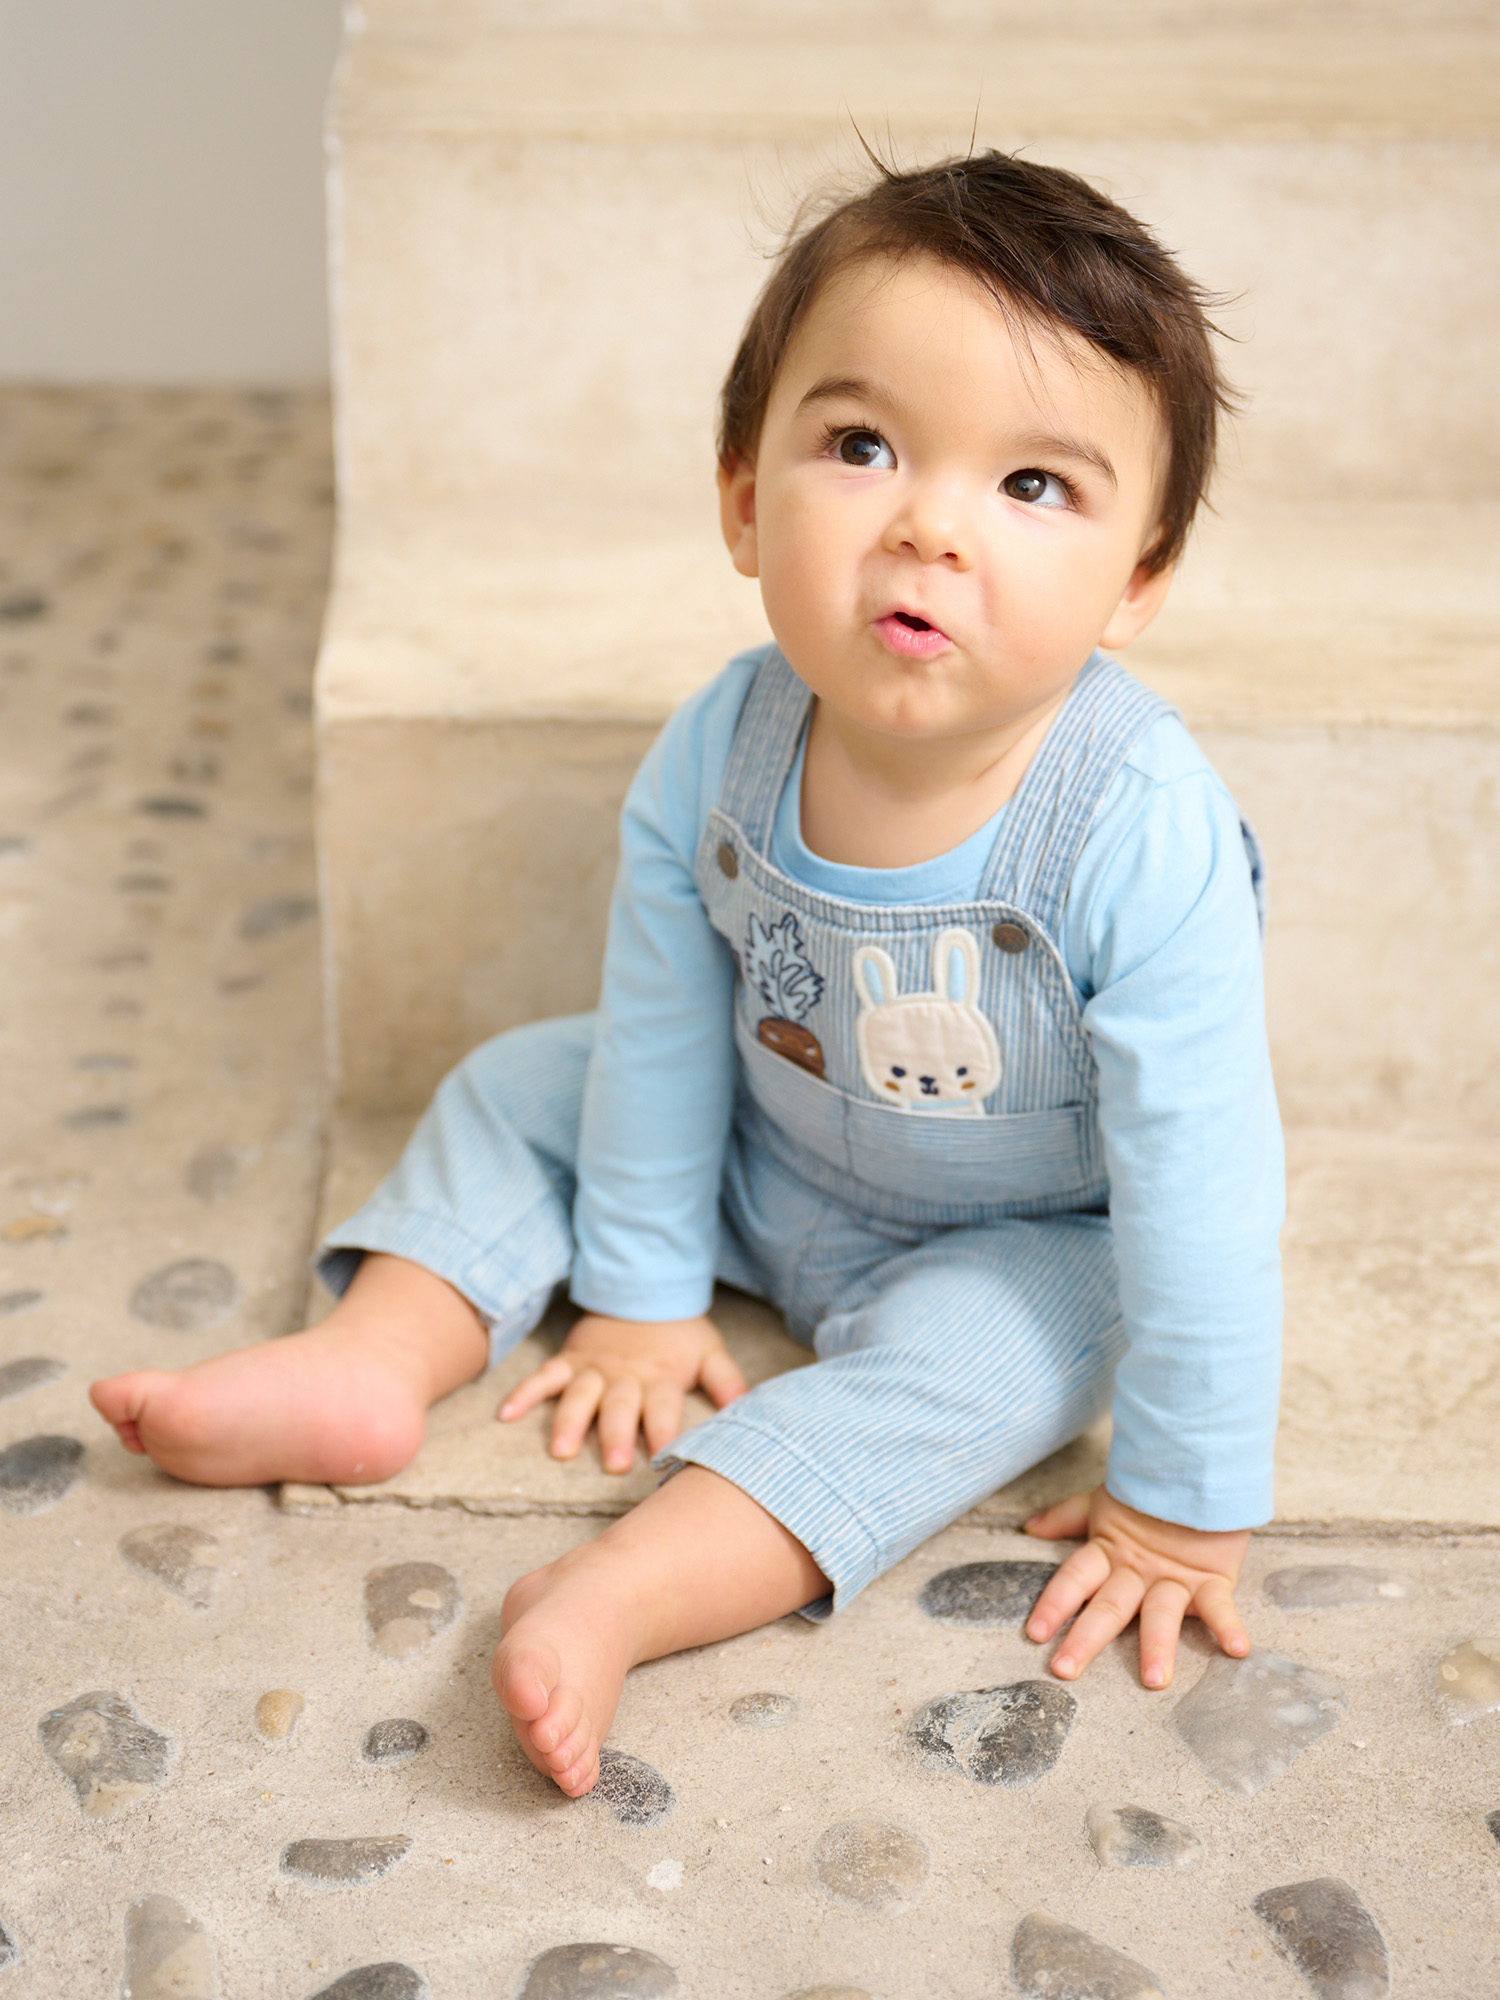 Vêtement bebé fille Soldes (6 mois à 8 ans)